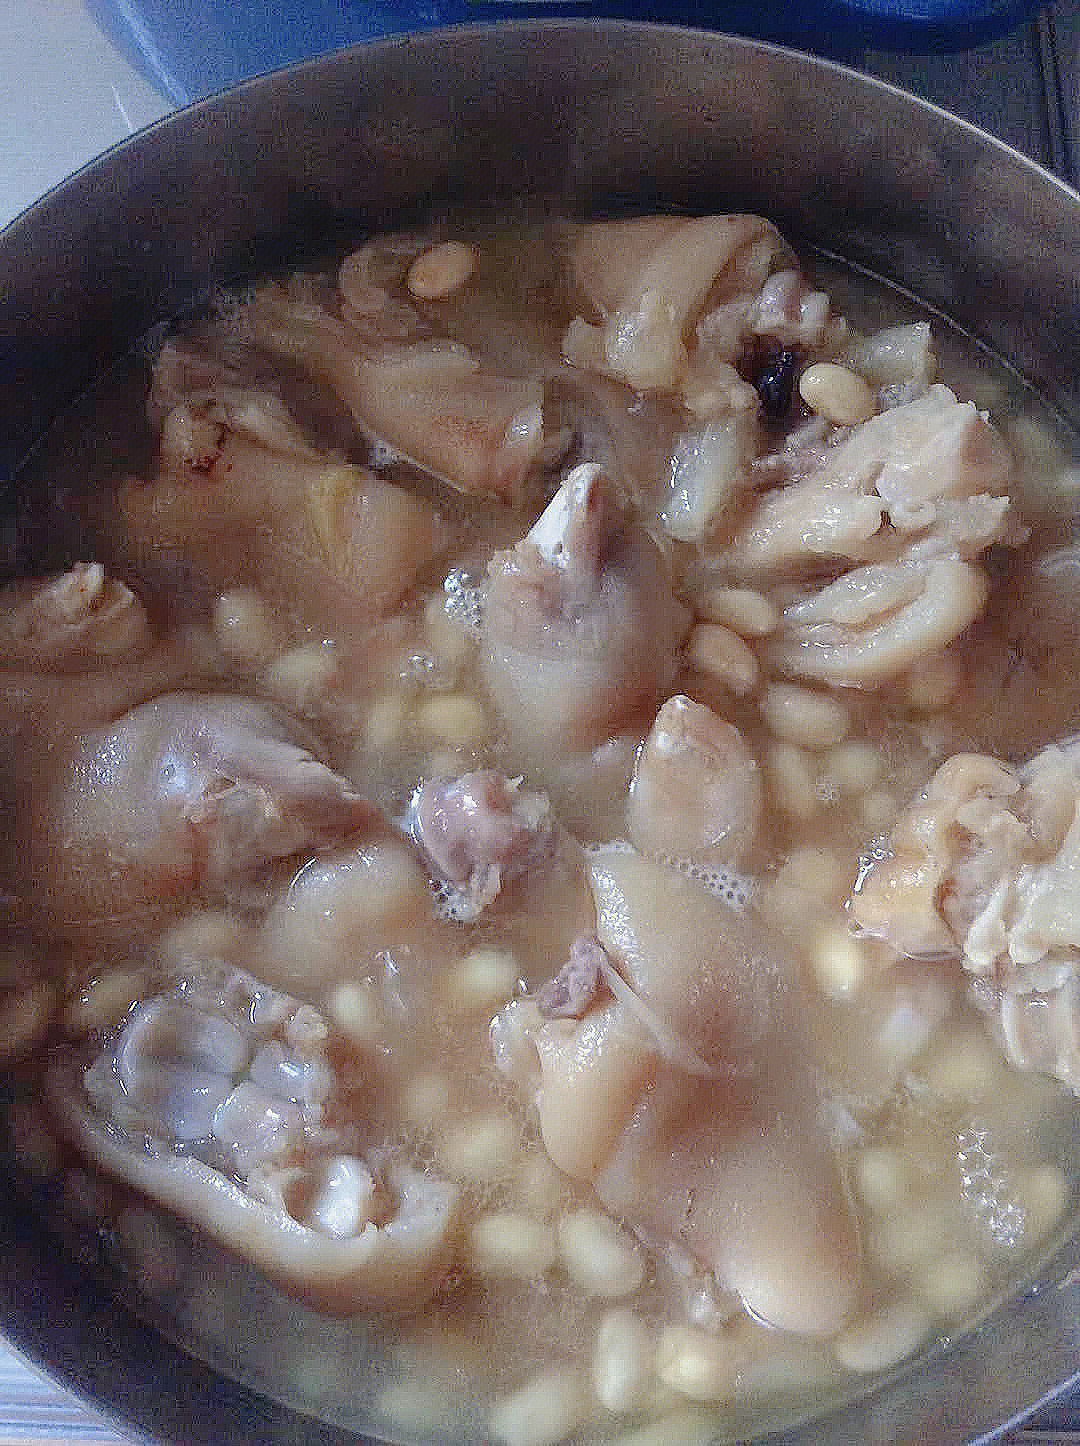 猪蹄黄豆汤